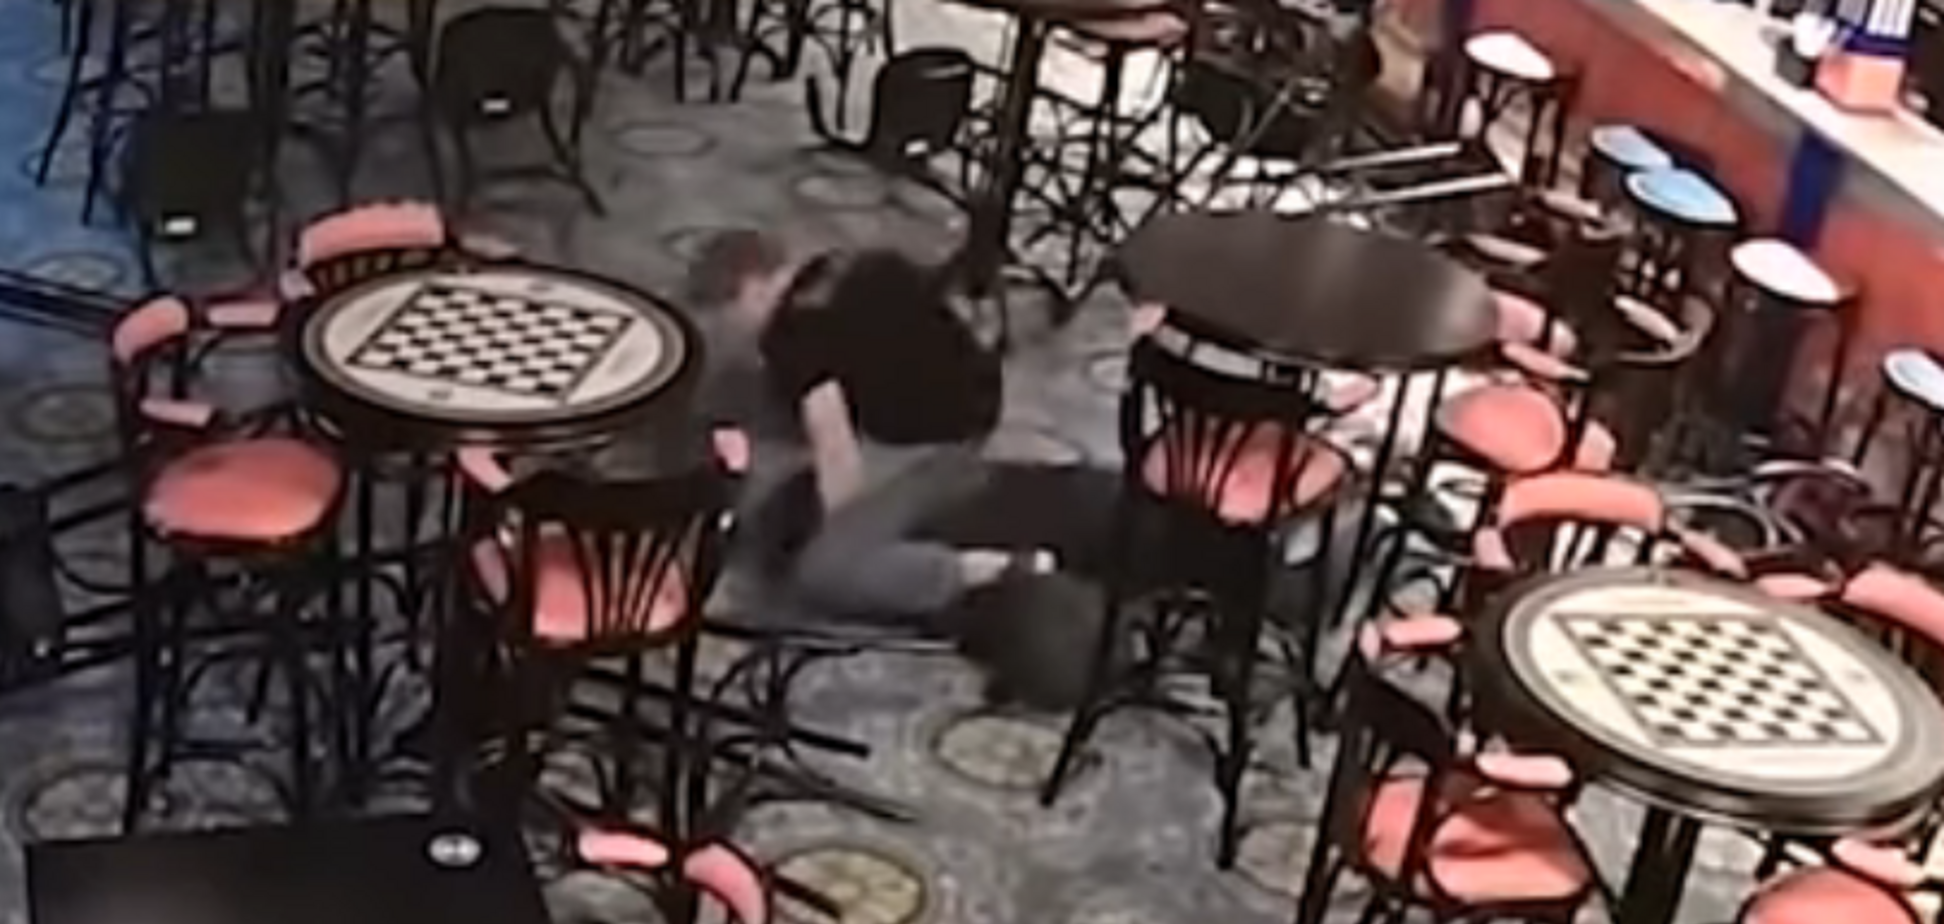 У Москві бармен забив до смерті клієнта: моторошні кадри